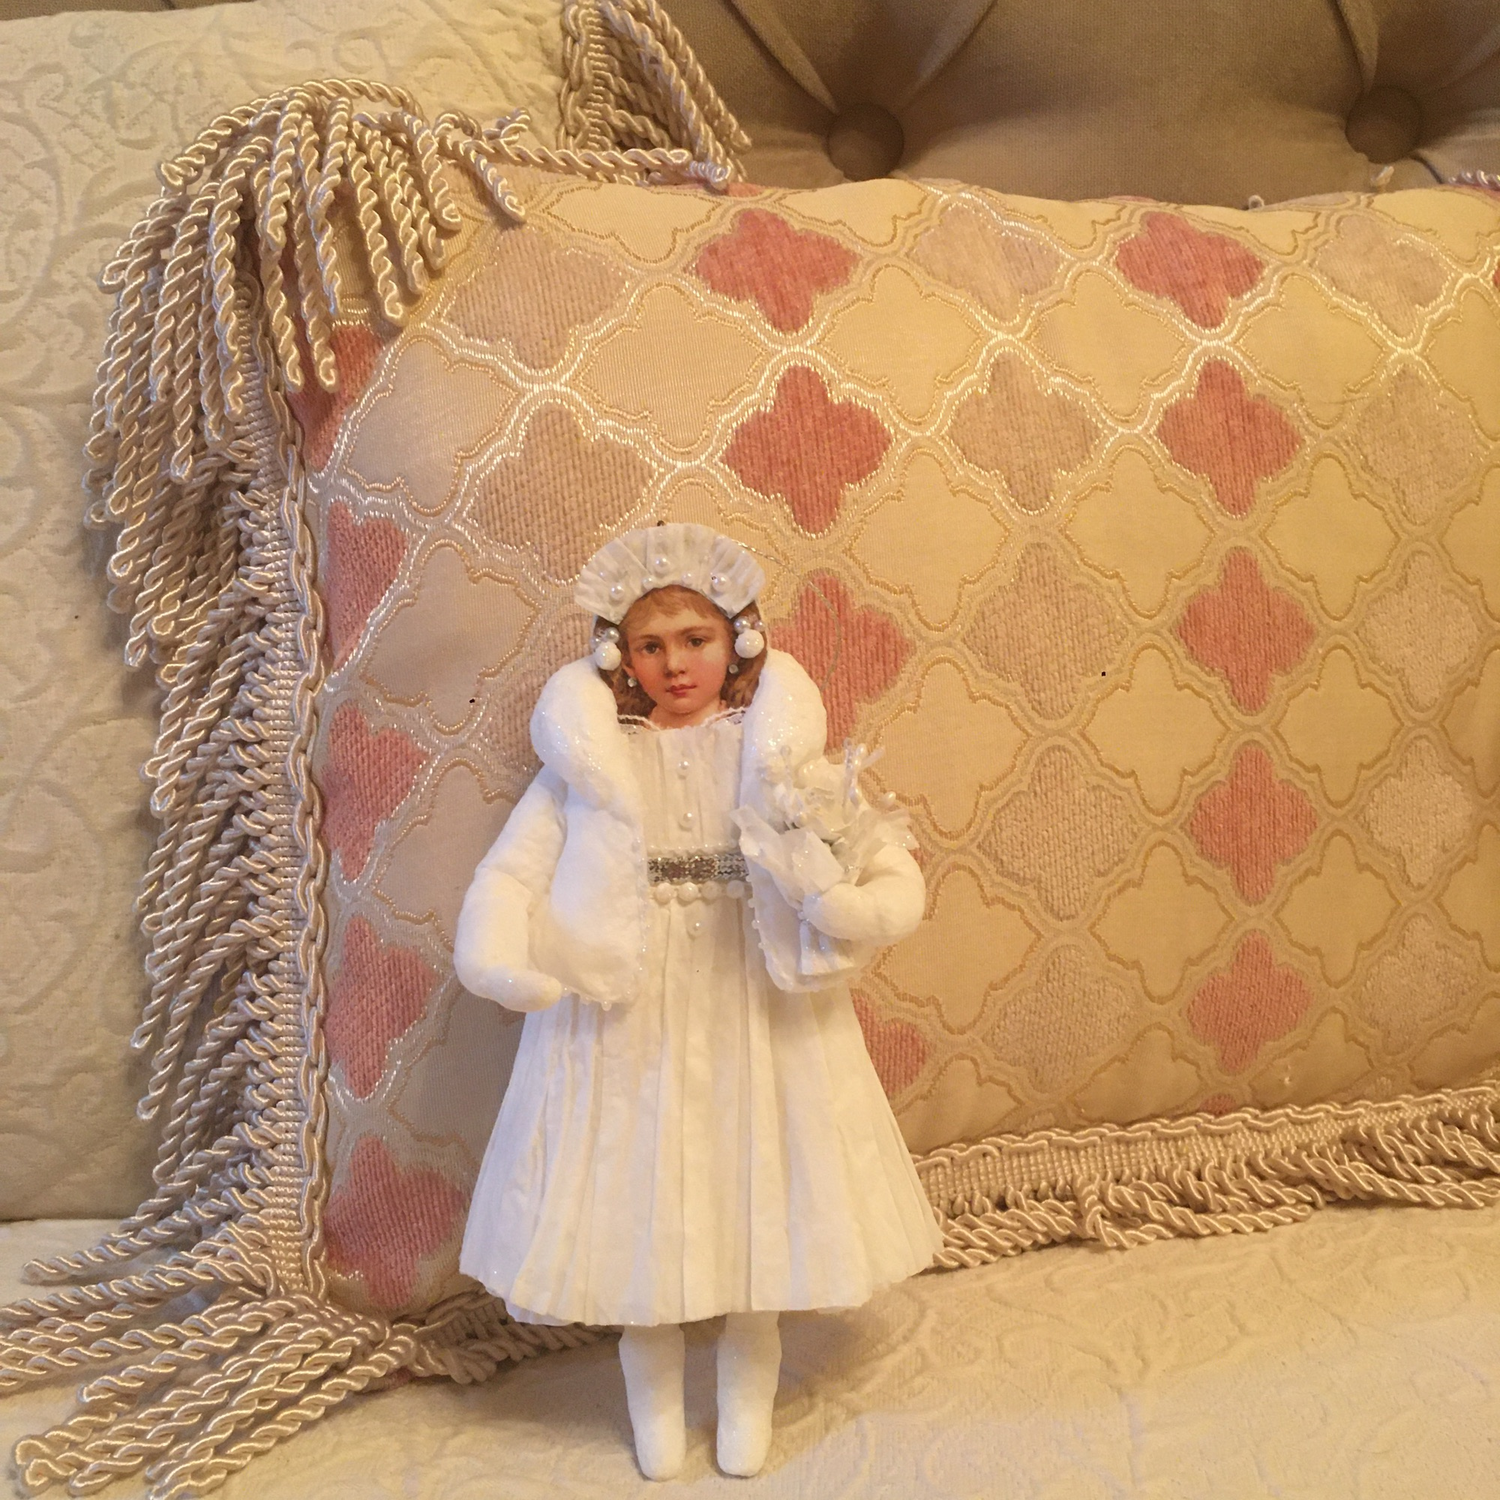 Photo №2 к отзыву покупателя Irasokoloff о товаре "Девушка в белом". Ватная интерьерная игрушка.